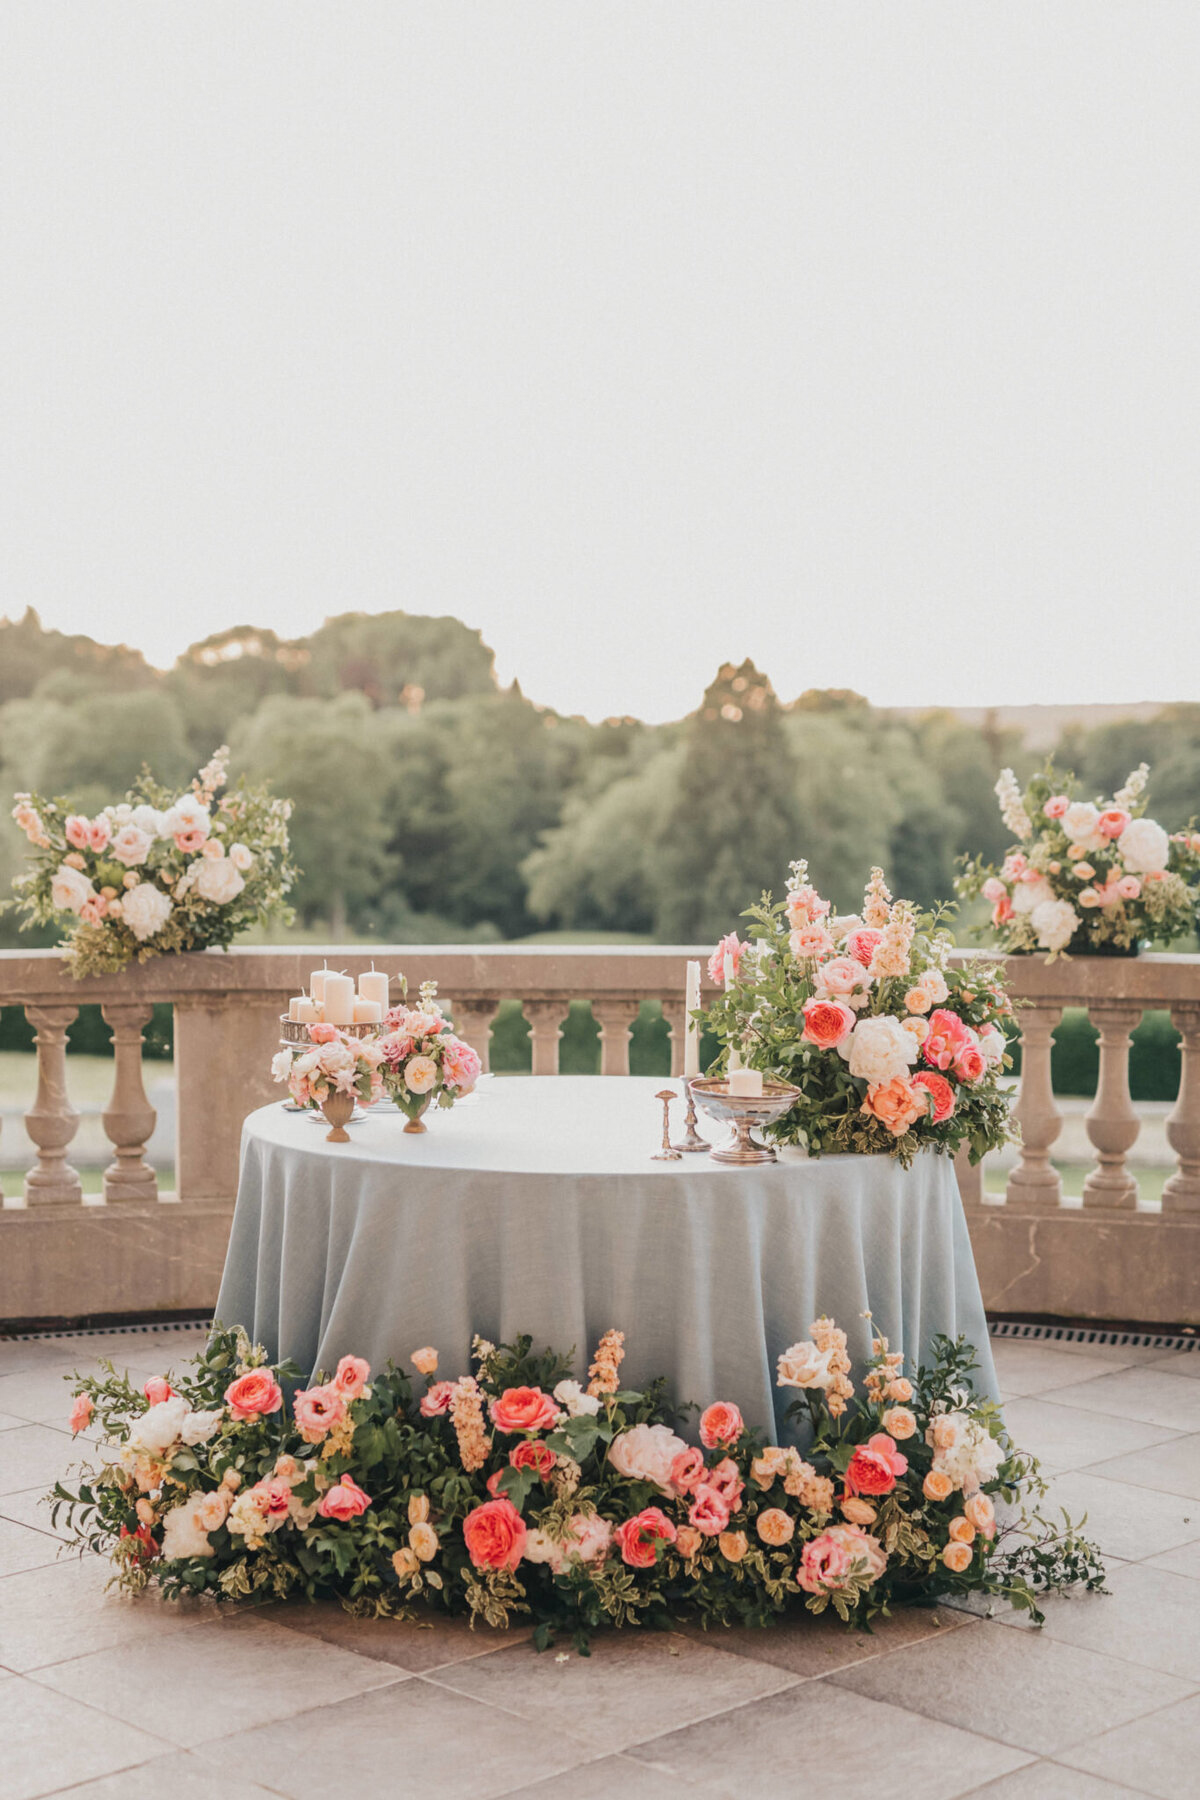 Timeless Elegance: romantic and elegant flower for the wedding cake table